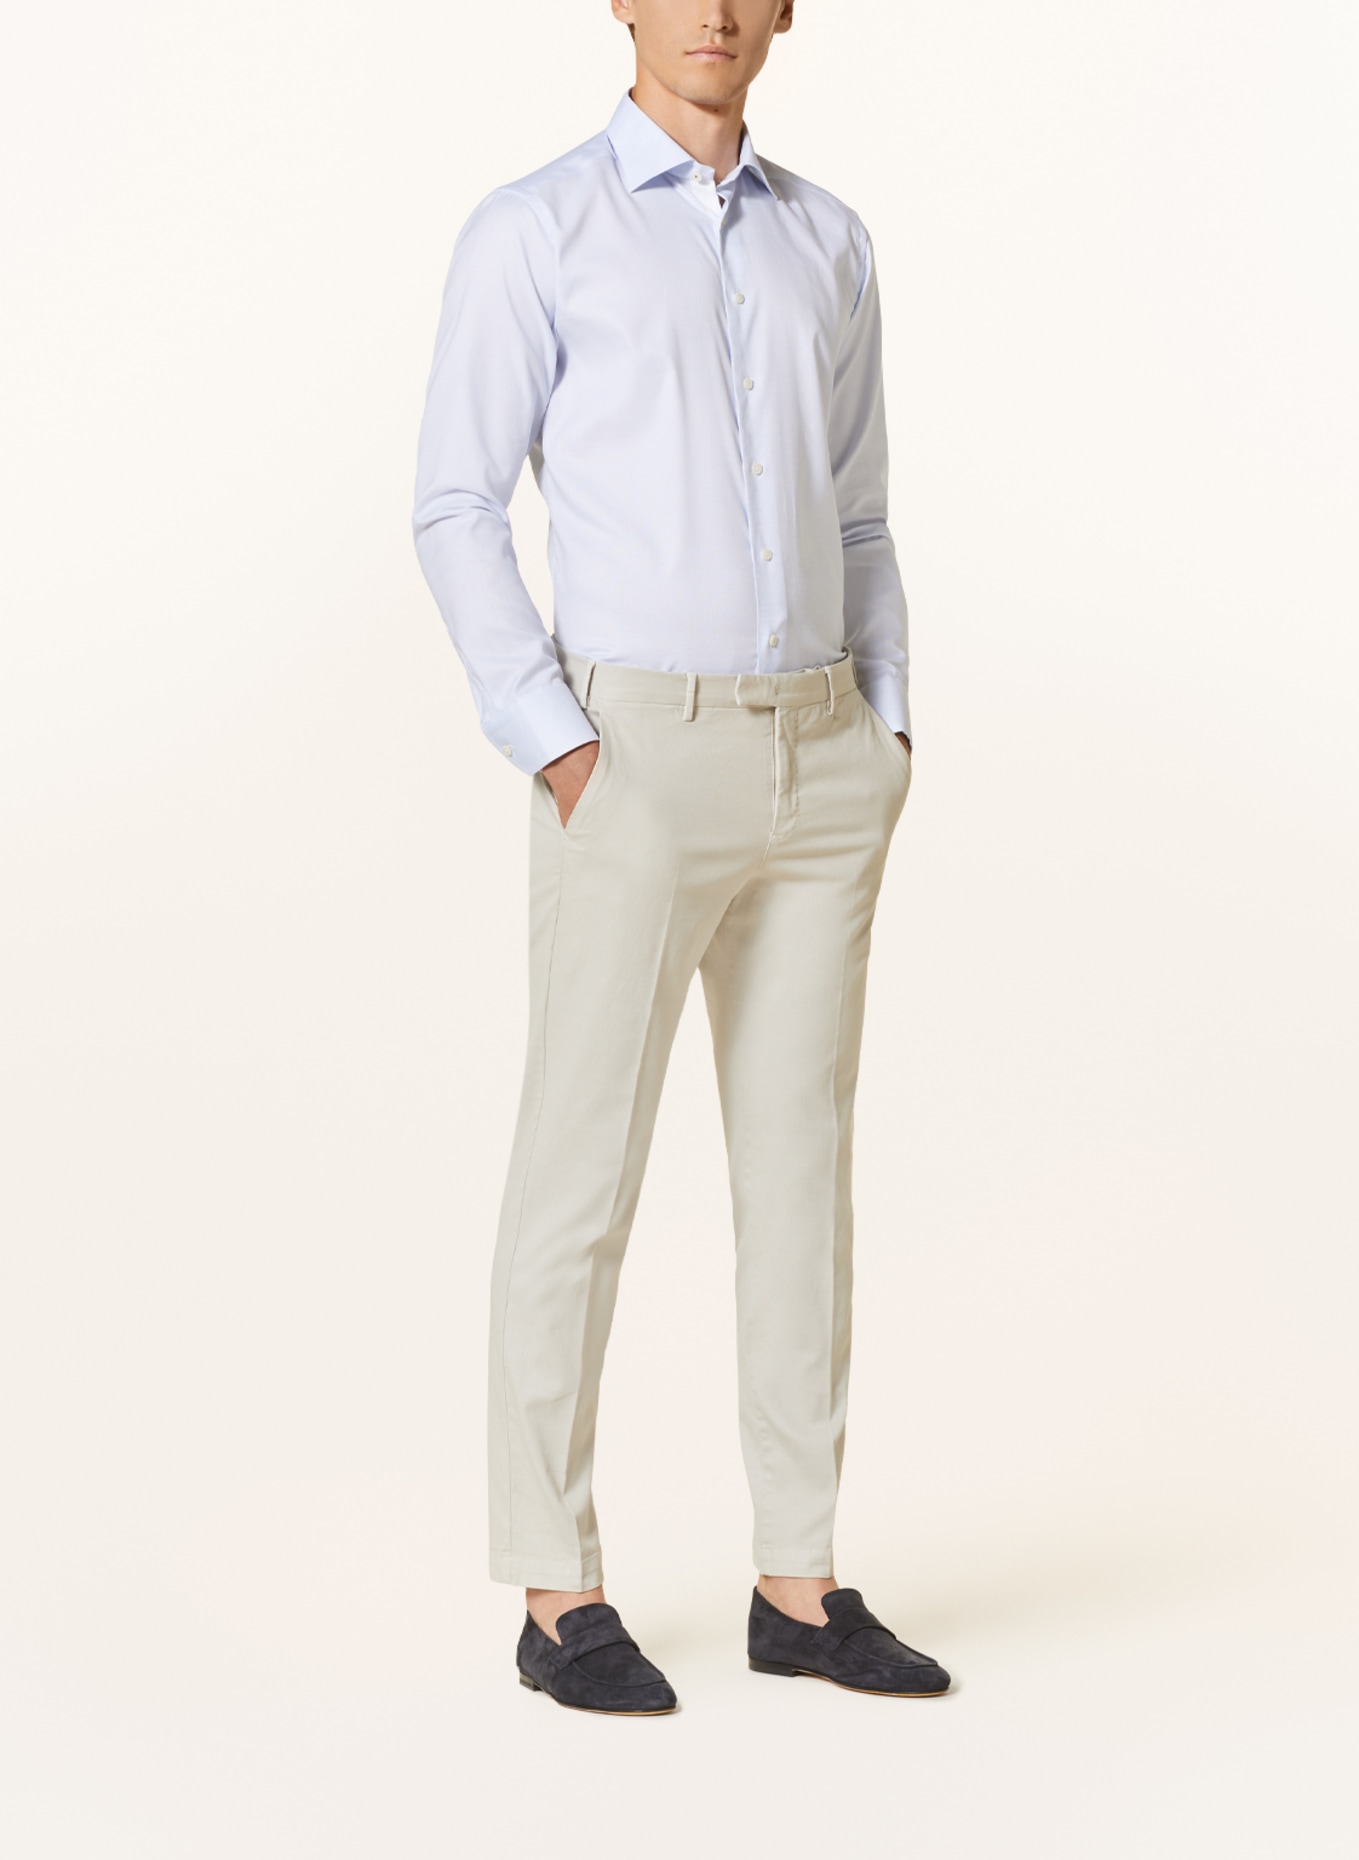 ETON Piqué shirt slim fit, Color: LIGHT BLUE (Image 2)